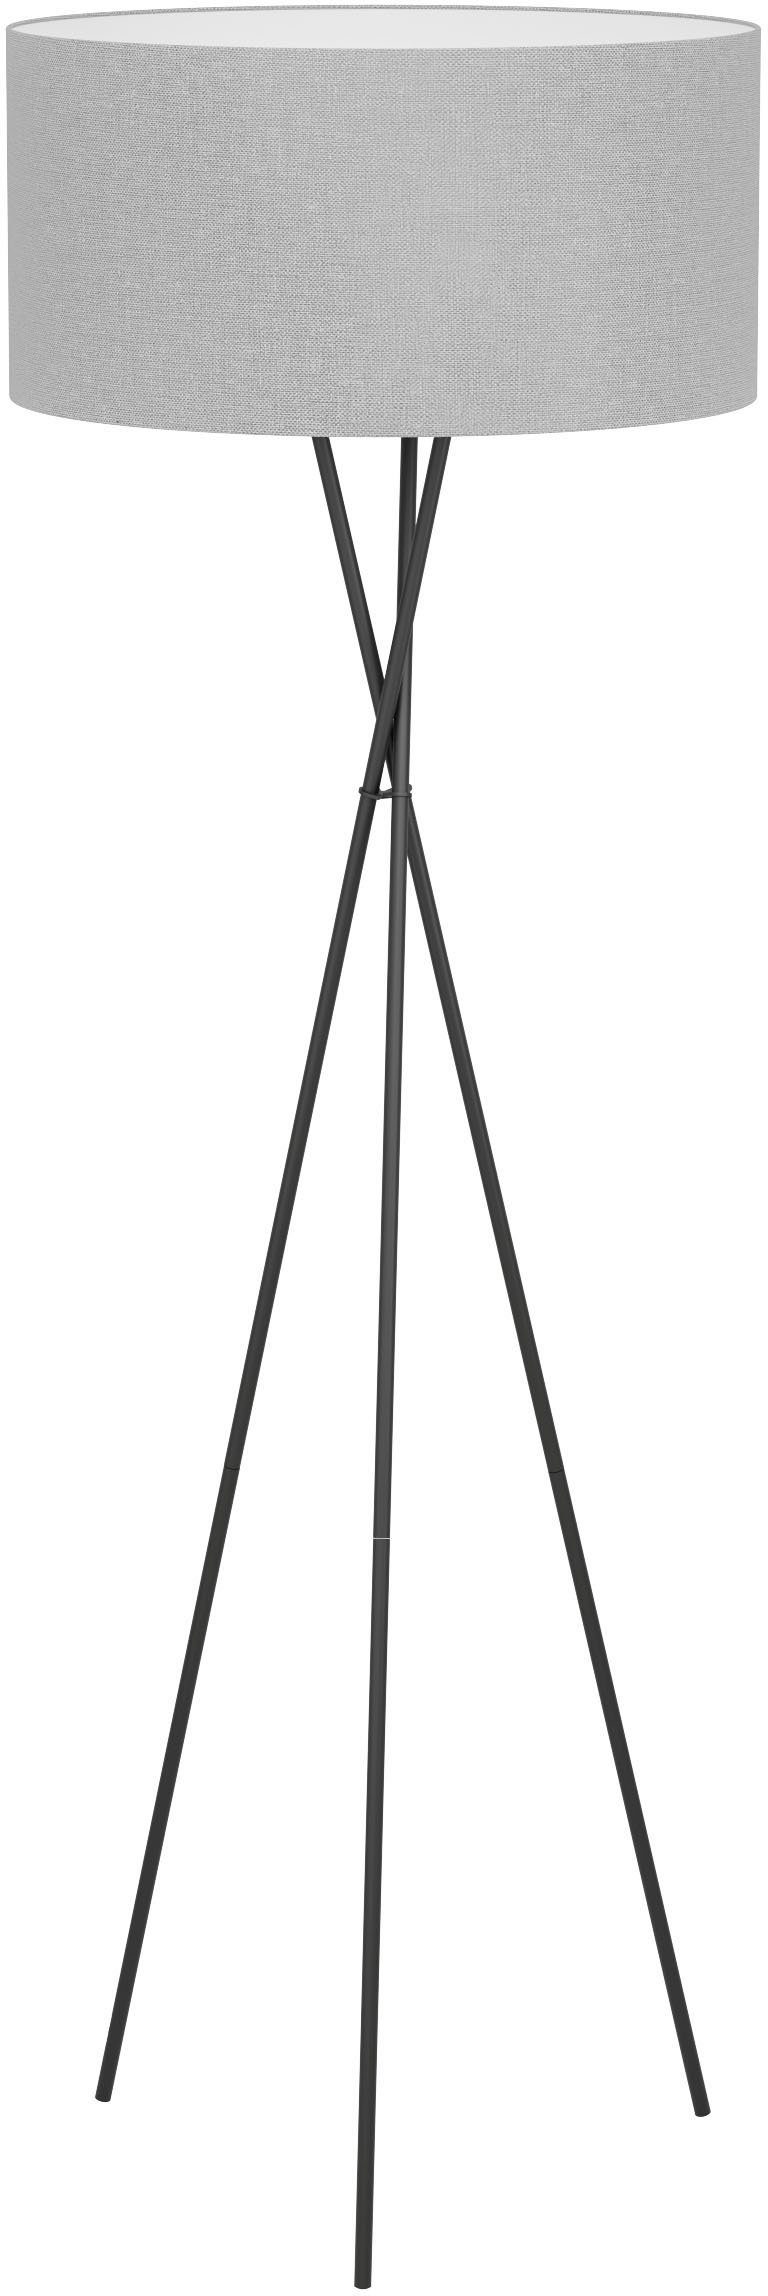 EGLO Stehlampe FONDACHELLI, Leuchtmittel wechselbar, ohne Leuchtmittel, Stehleuchte in schwarz aus Stahl - exkl. E27 - 1X60W